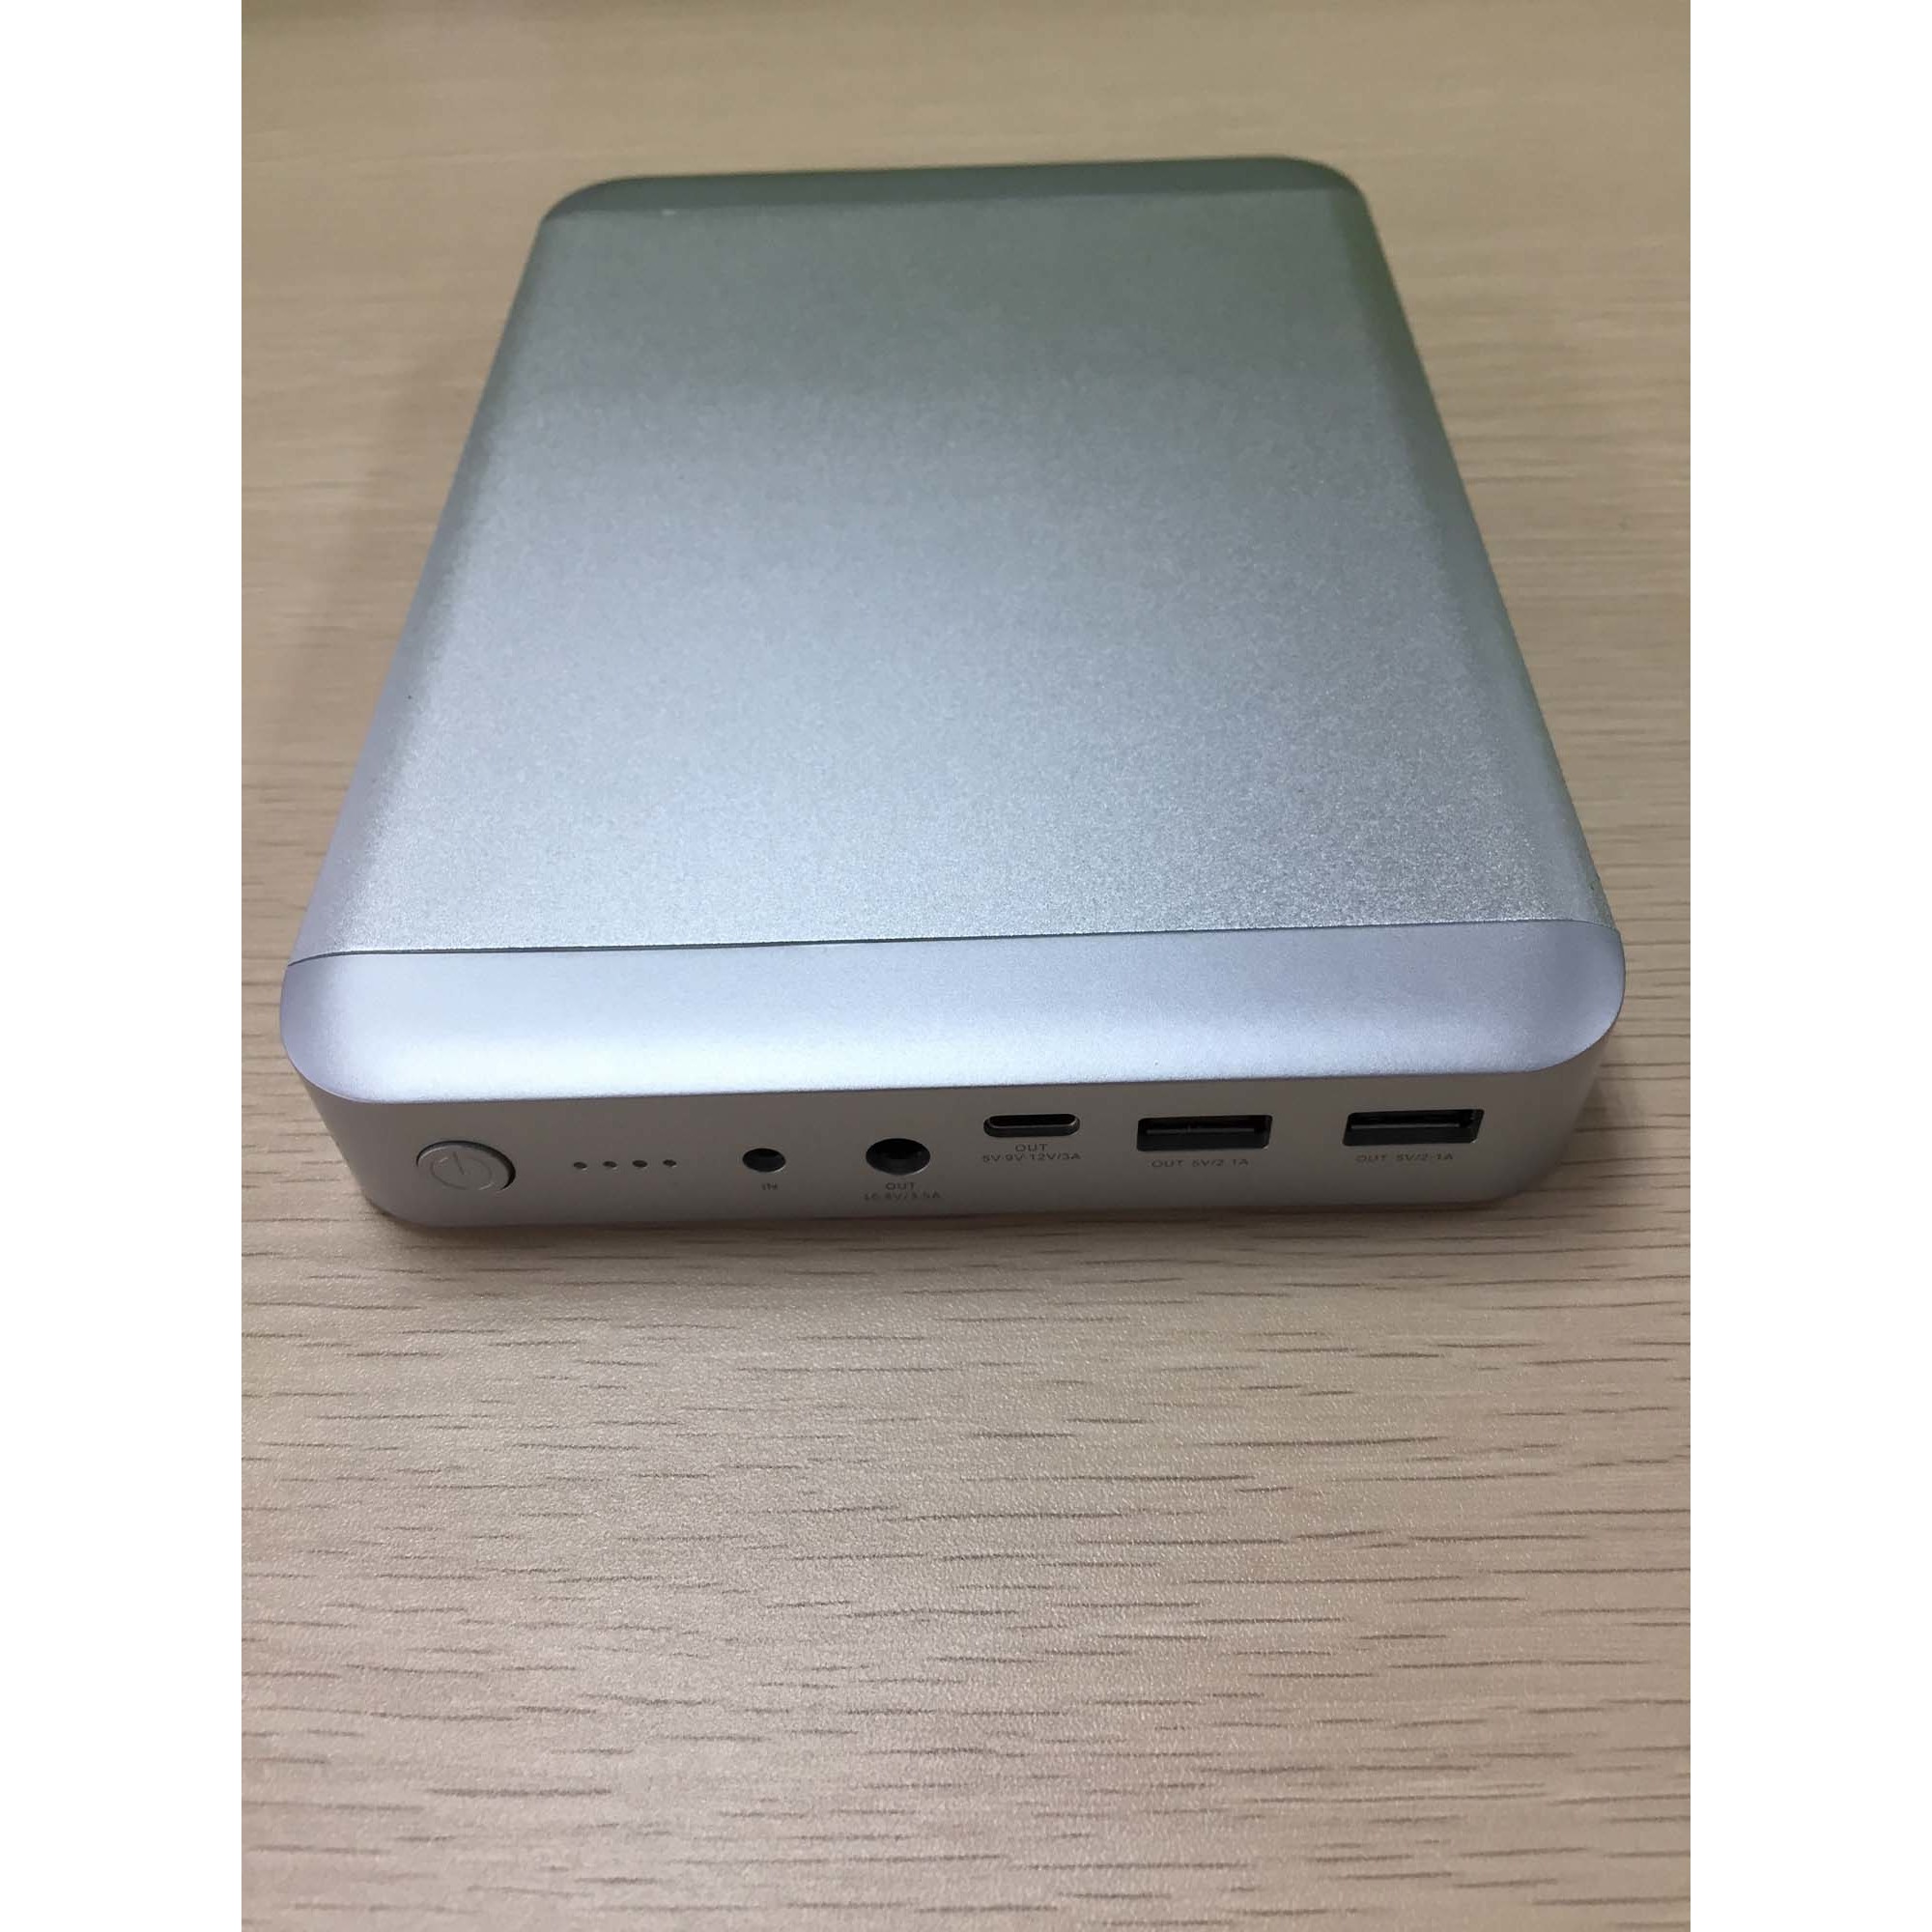 MAXOAK 36000mAh Grande capacité Power Bank batterie externe chargeur Backup  pour MacBook Pro , Macbook Air, les autres tablettes Apple, smartphone,  tablet PC (Ne peut pas charger 85W de MarBook )